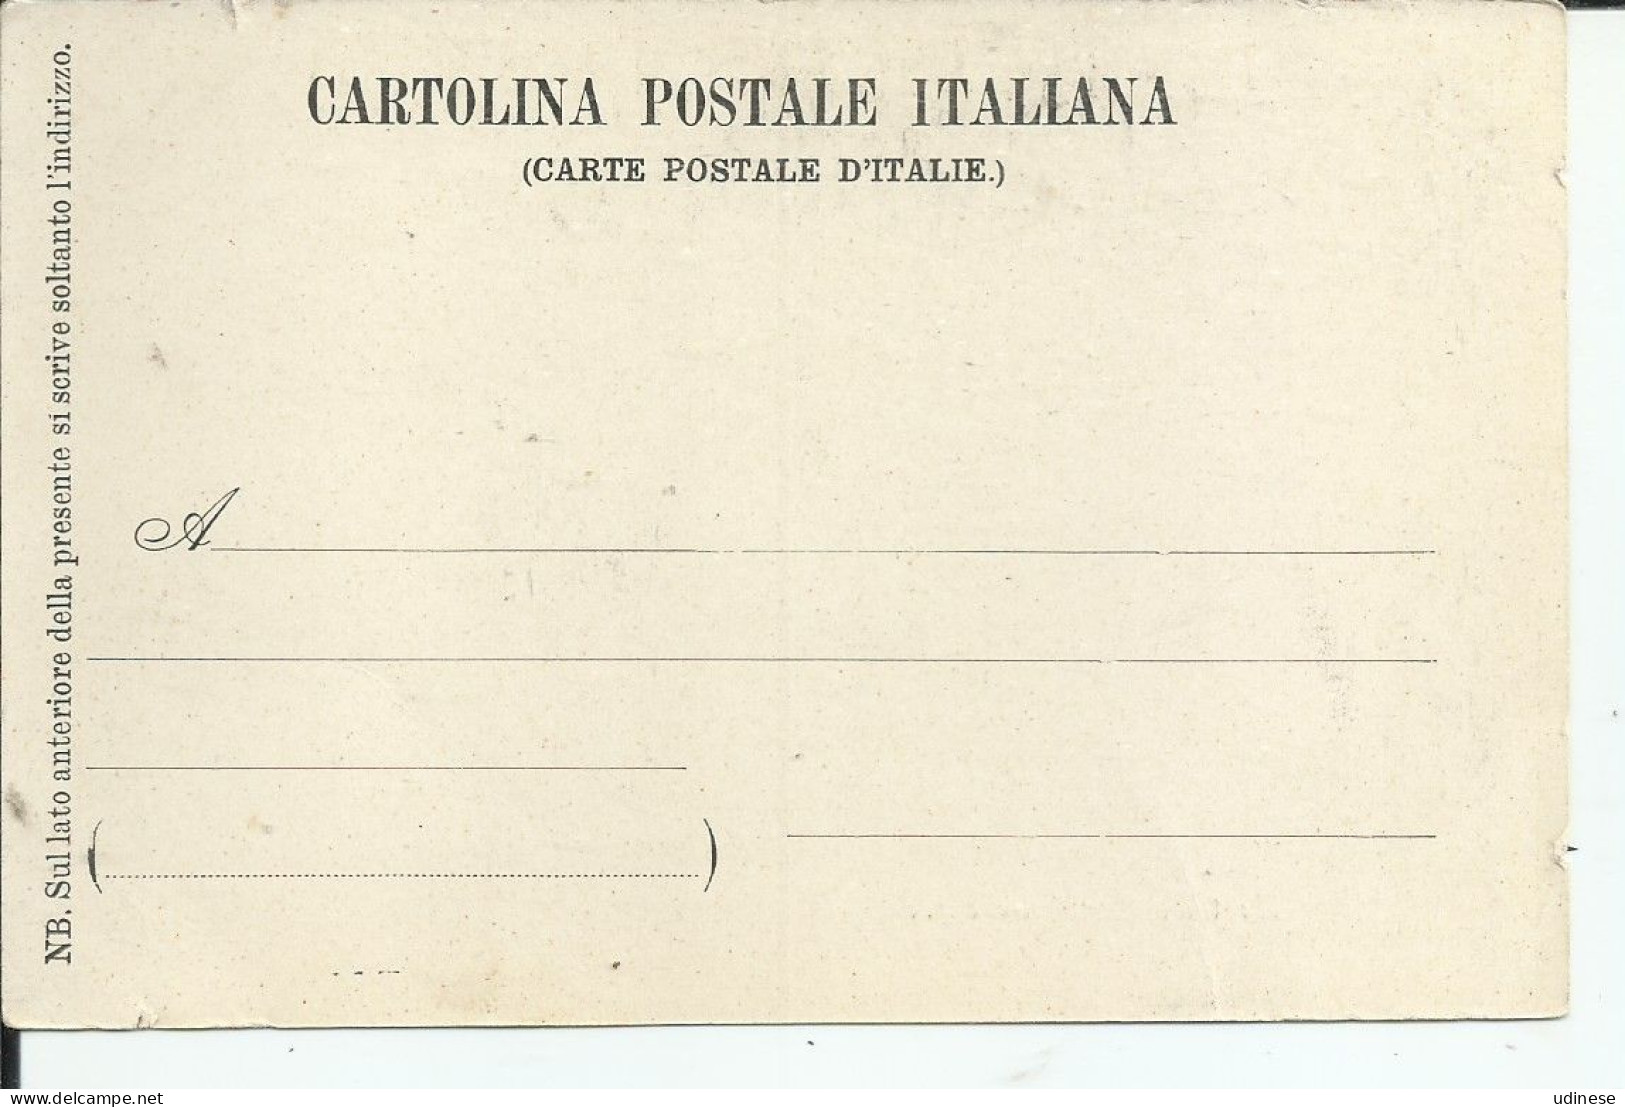 CARTOLINA POSTALE ITALIANA 1900 Ca. - BEATRICE CENCI IN CARCERE, DIPINTO DI ACHILLE LEONARDI - Prison